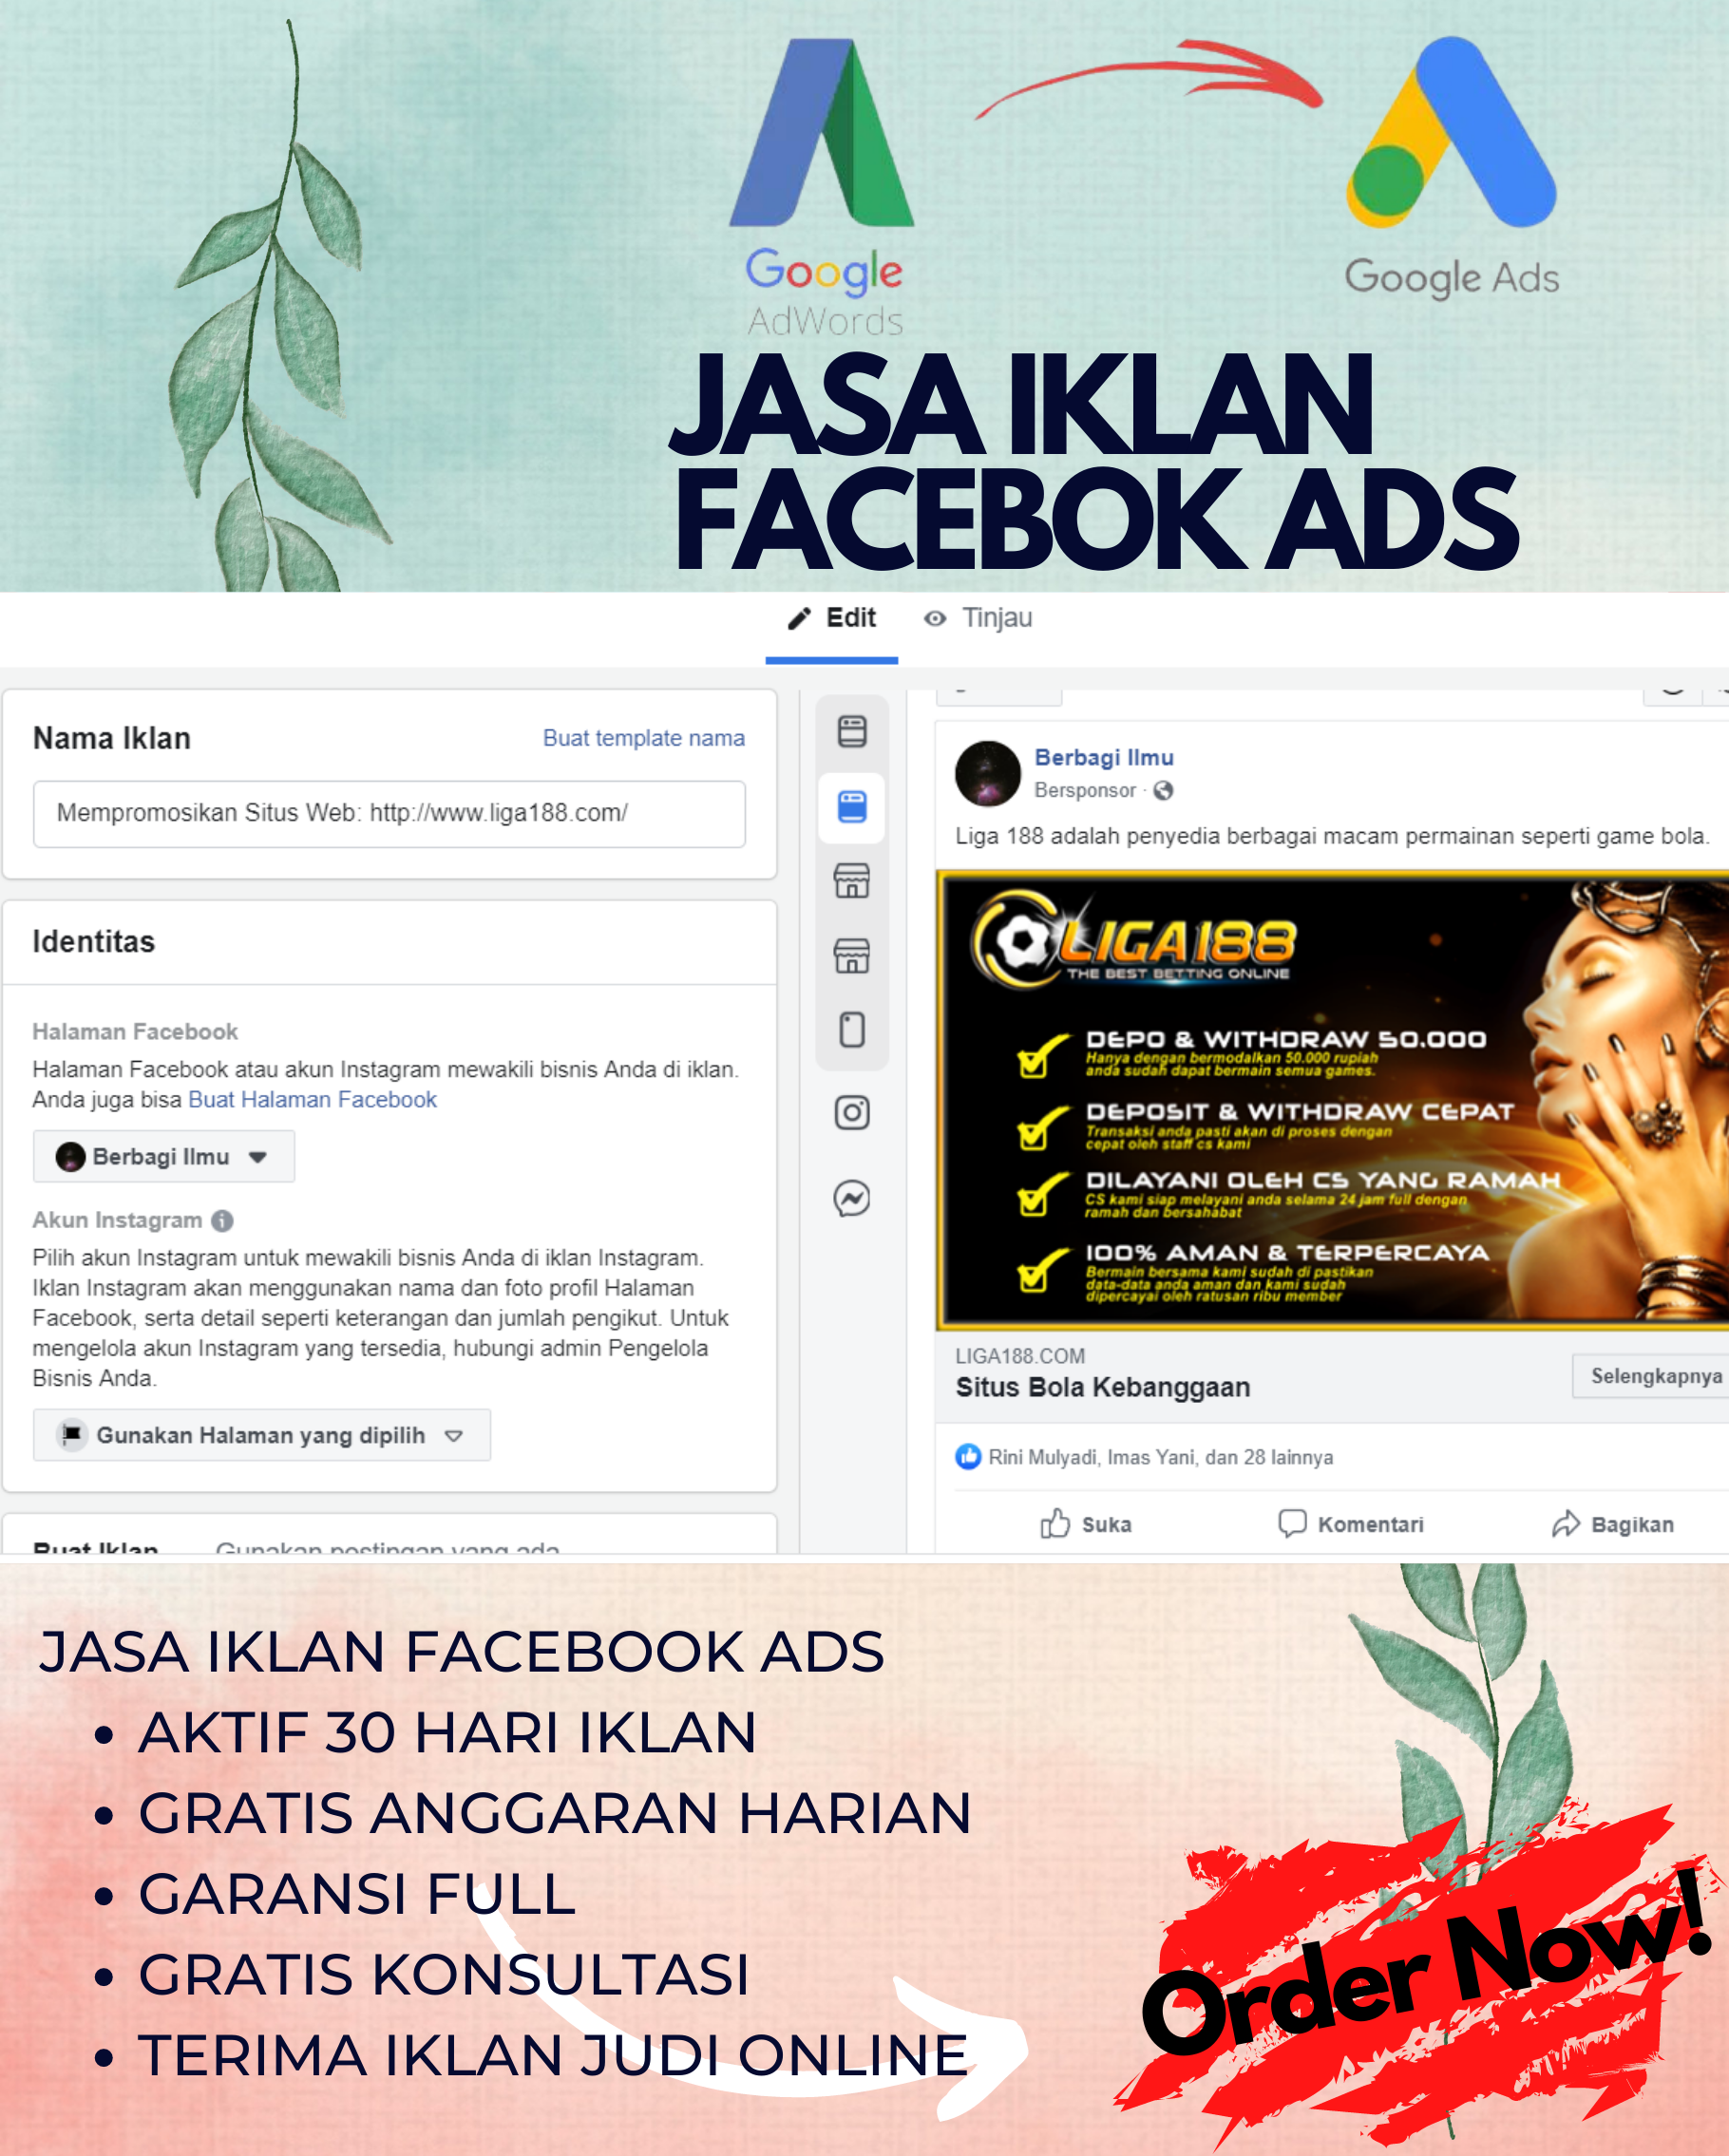 Jasa Iklan Facebook Ads